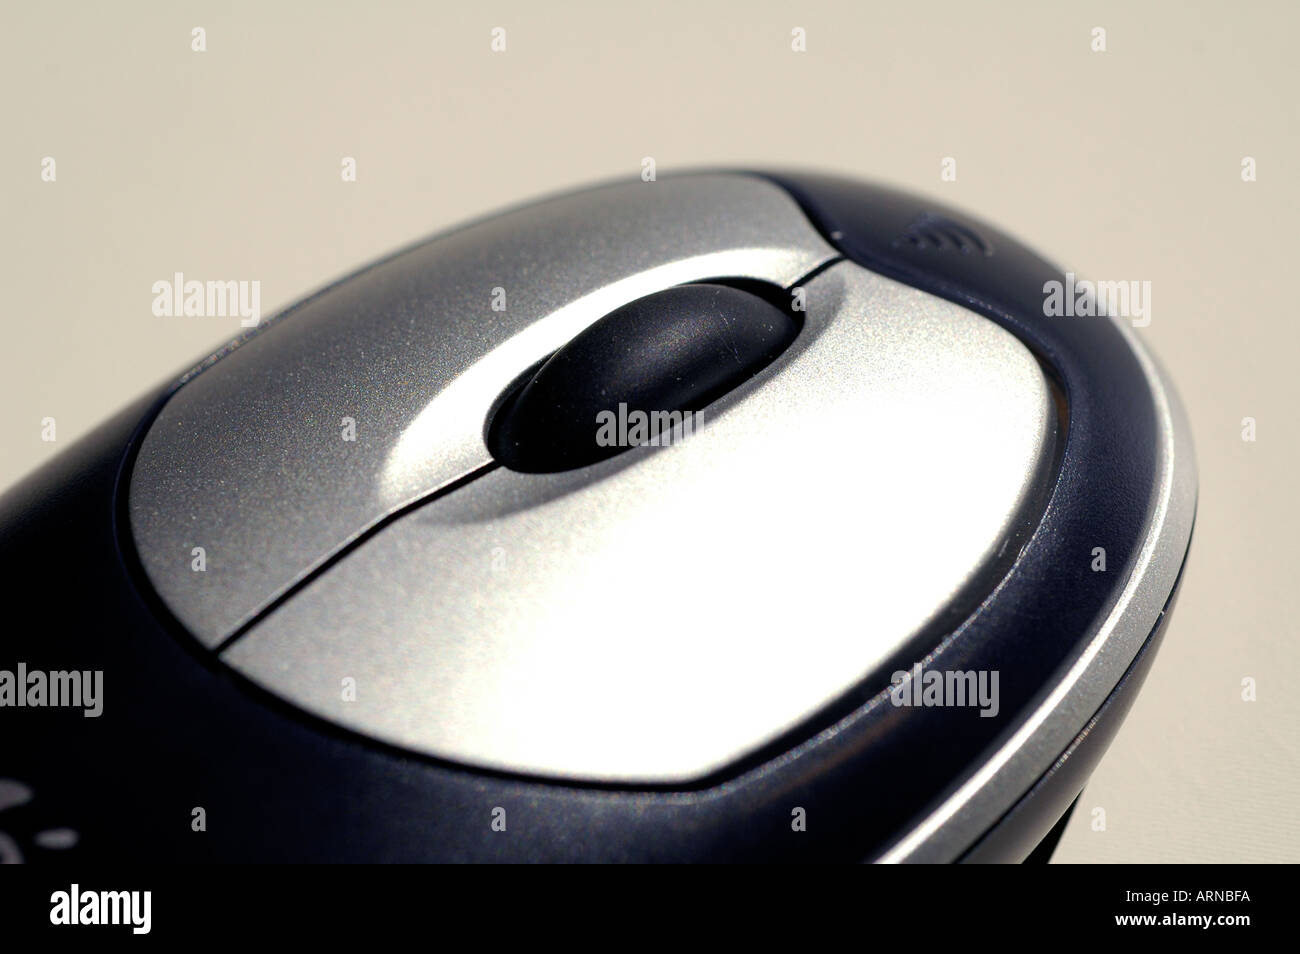 Détail d'une souris d'ordinateur avec deux boutons et une molette qui peut aussi agir comme un troisième bouton Banque D'Images